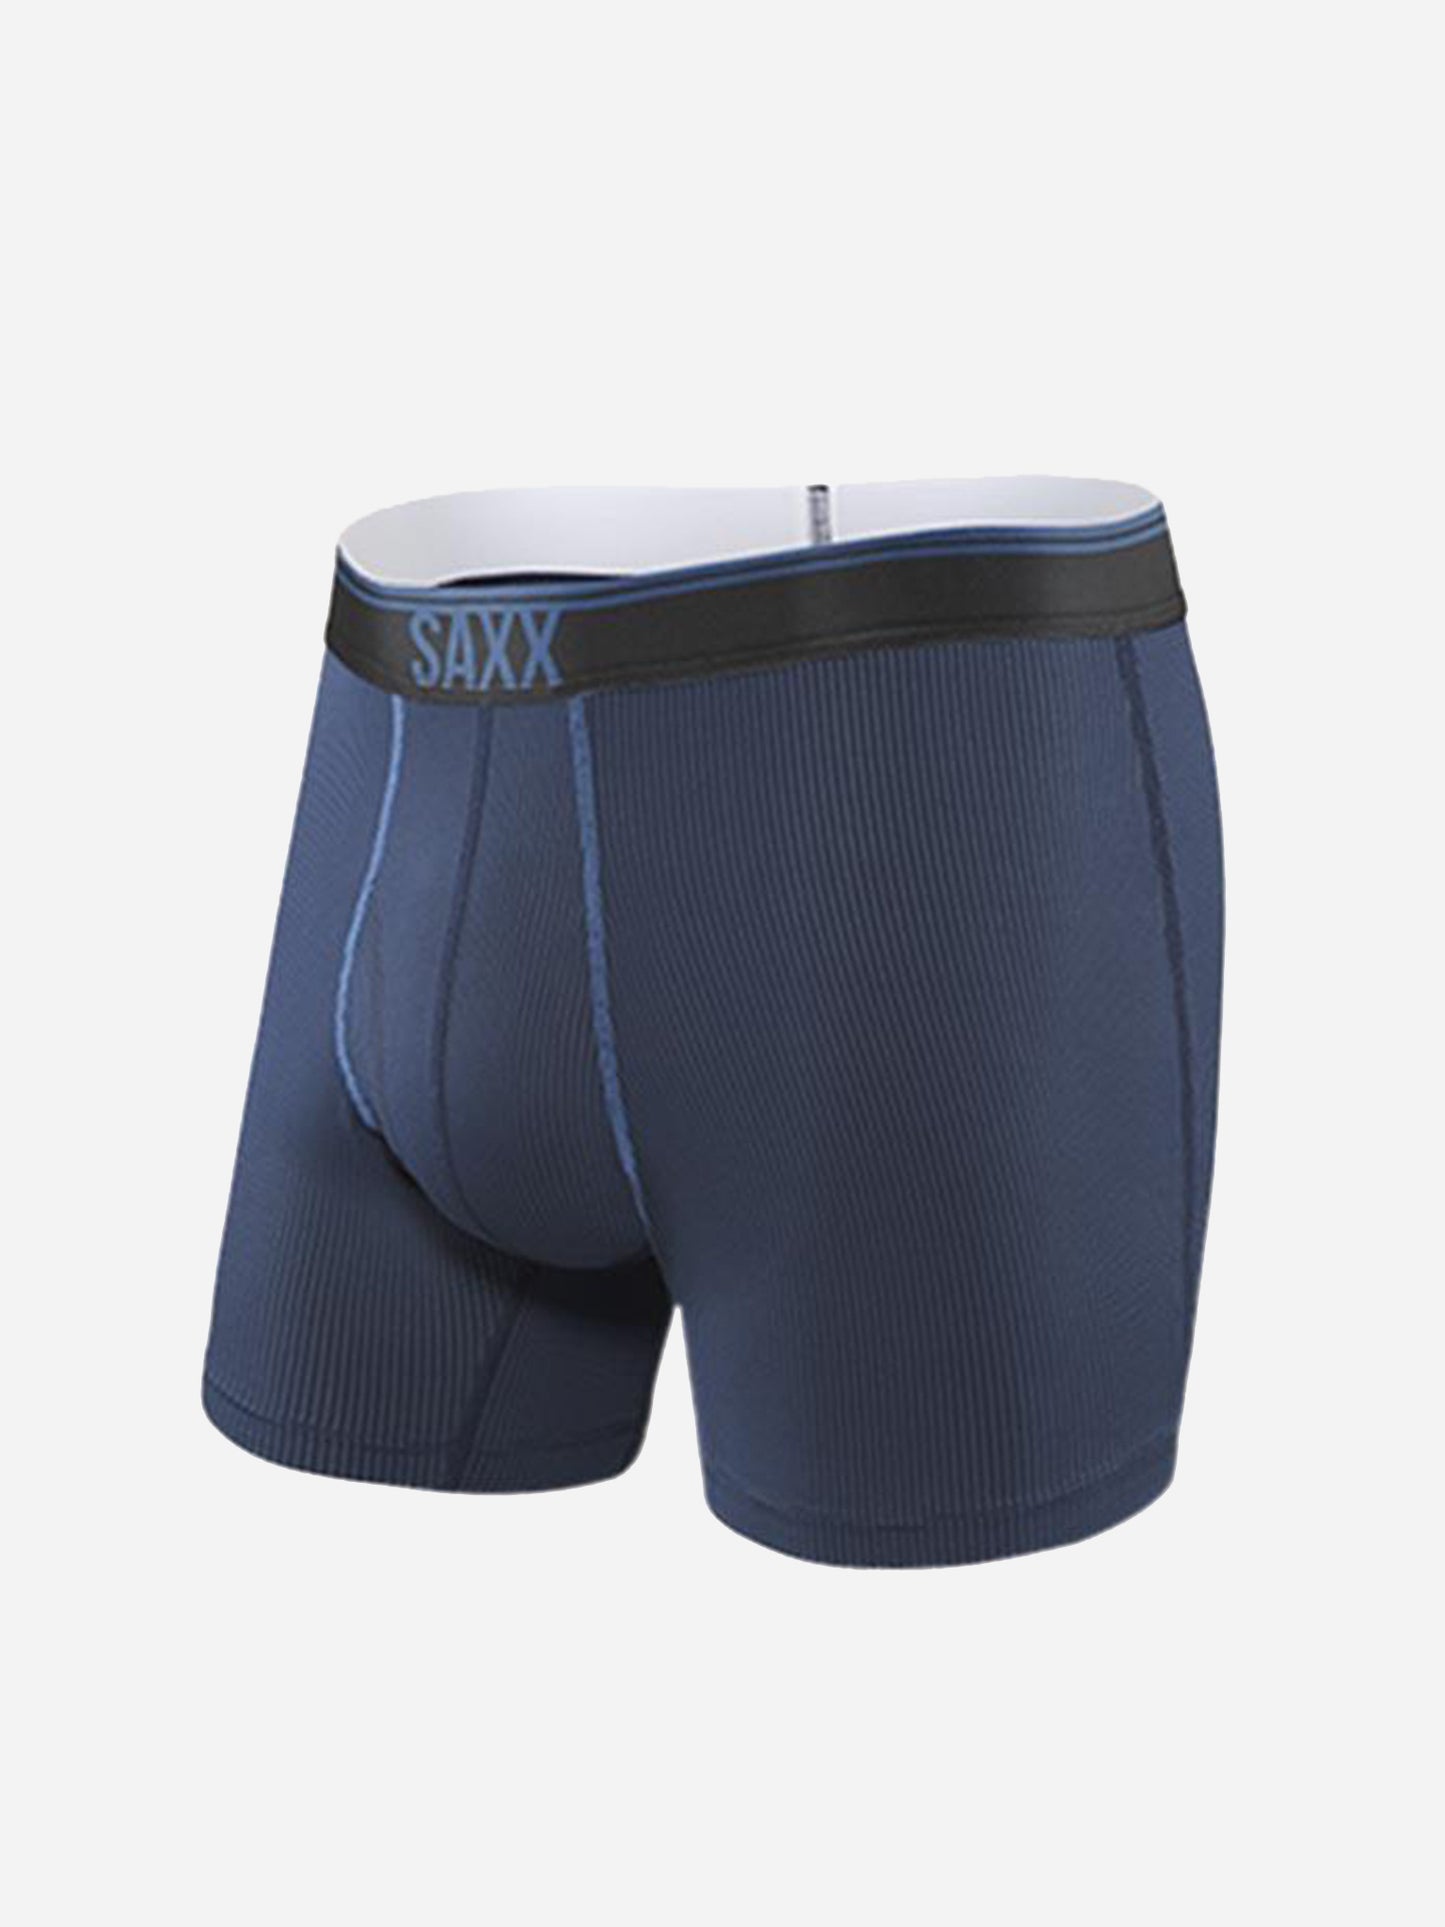 Saxx Underwear Quest 2.0 Boxer Brief